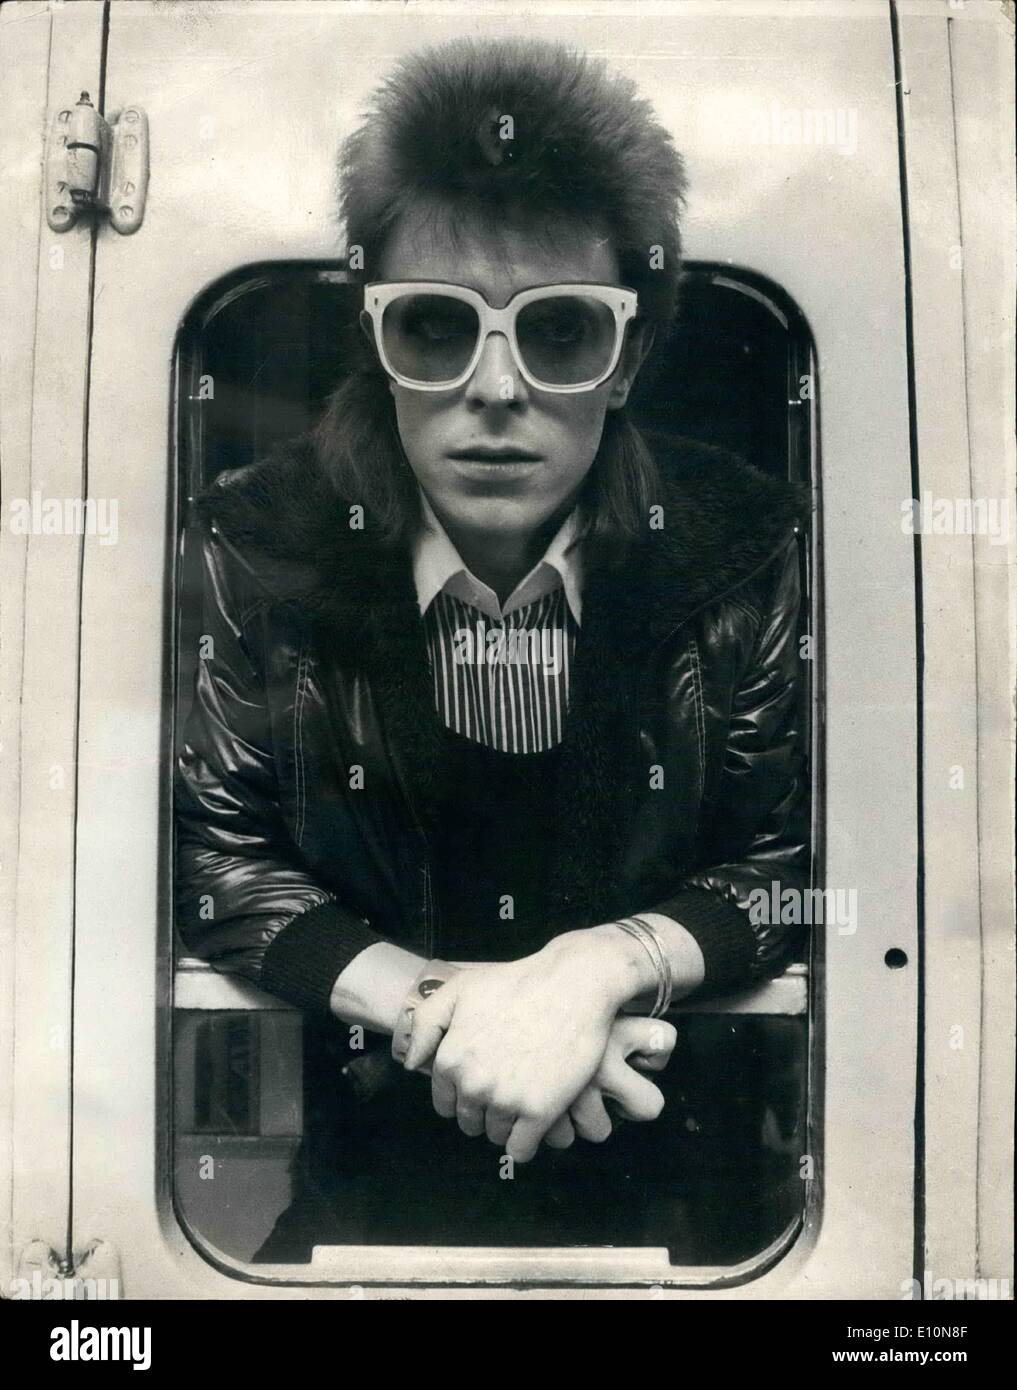 Juillet 07, 1973 - David Bowie à Paris. : David Bowie, la pop star qui, la semaine dernière, arrêter de donner des concerts à l'apogée de sa popularité, n'a certainement pas cessé de travailler. Aujourd'hui, seulement cinq jours après son dernier concert qui est entré à la fin d'une tournée britannique de sept semaines, de partir pour Paris pour commencer l'enregistrement de son dernier LP. Il va passer trois semaines au château d'enregistrement studios juste en dehors de Paris et se rendra ensuite à Rome pour compléter le LP à la LSF studios là. Photo montre David Bowie à Victoria Station aujourd'hui. Banque D'Images